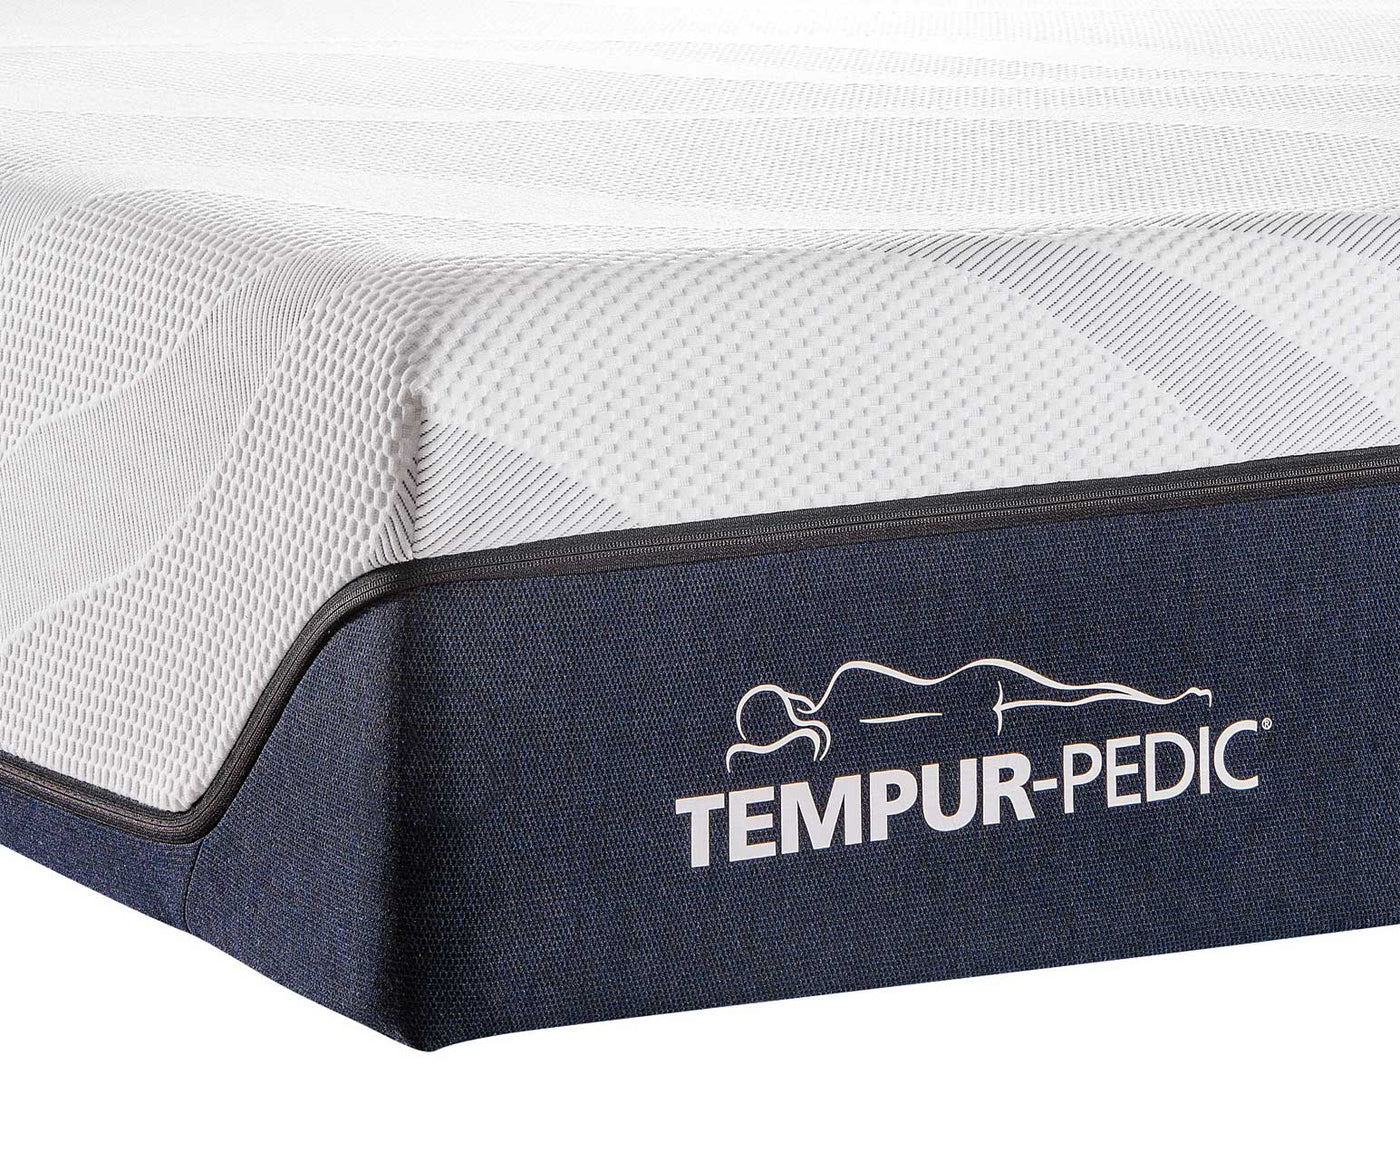 Tempur-Pedic LuxeAlign Firm King Mattress